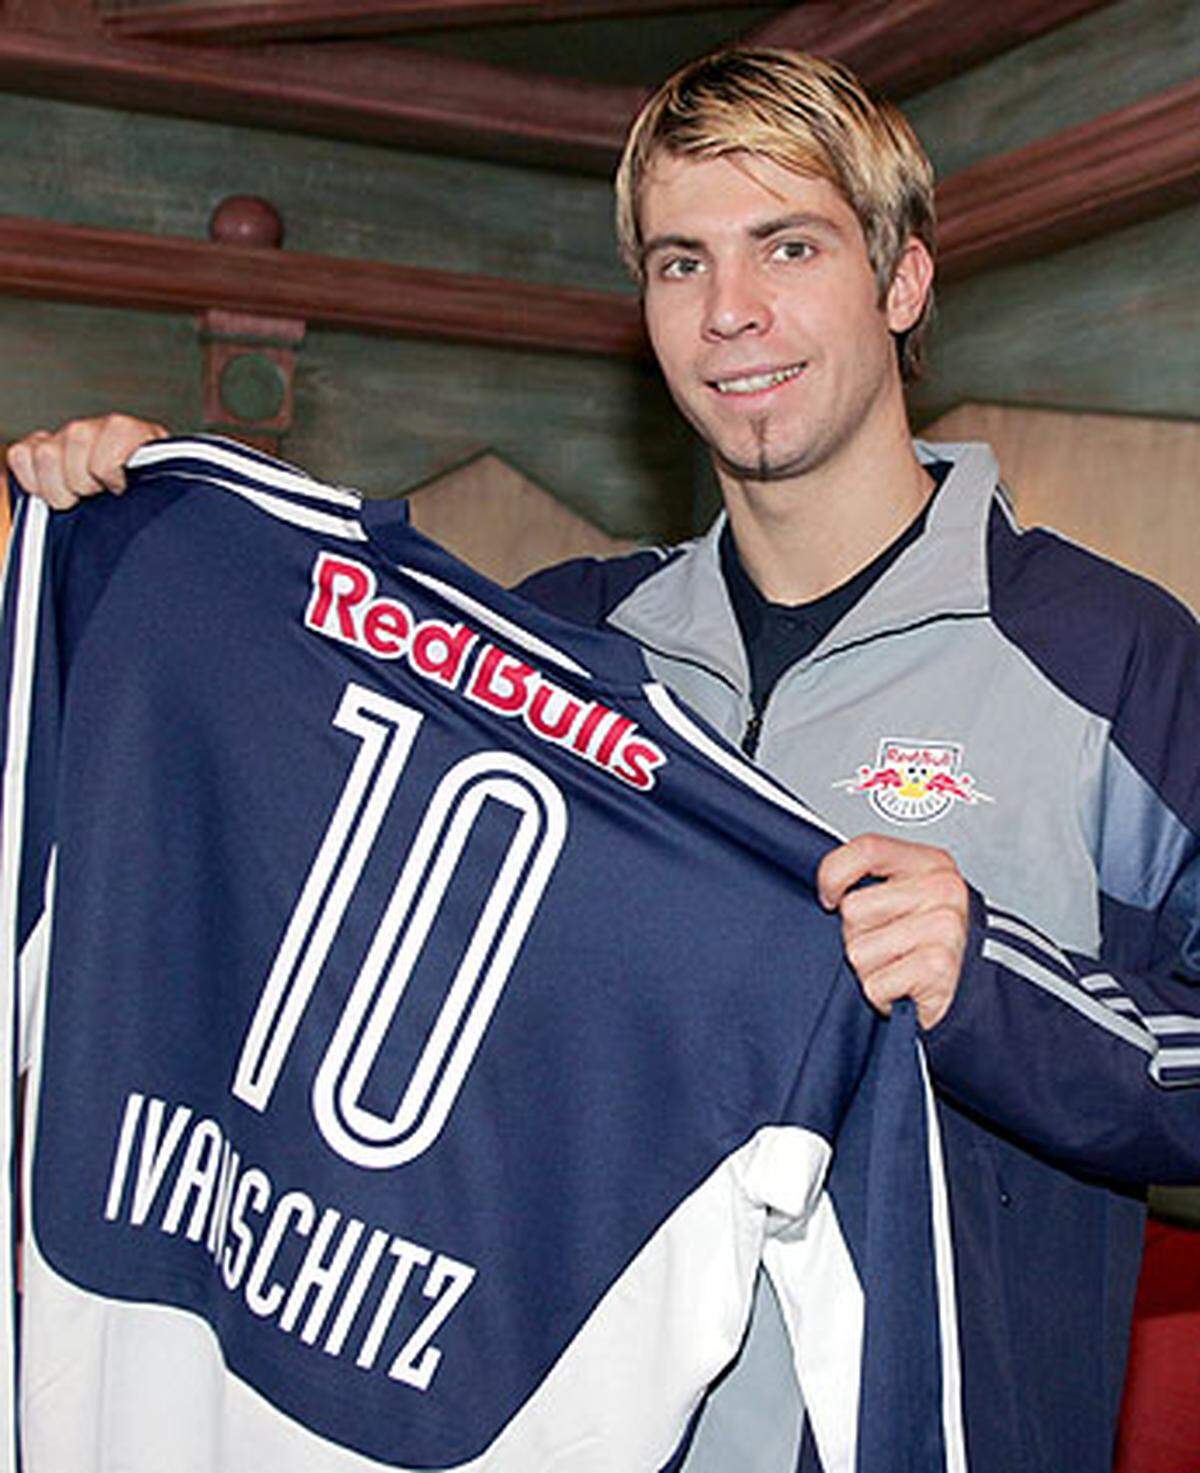 Im Jänner 2006 mussten die Rapid-Fans einen harten Schlag verdauen: Ihr Kapitän wechselte für vier Millionen Euro zu Red Bull Salzburg. "Judasschitz" hallte es in der Folge durchs Stadion - auch bei Länderspielen.